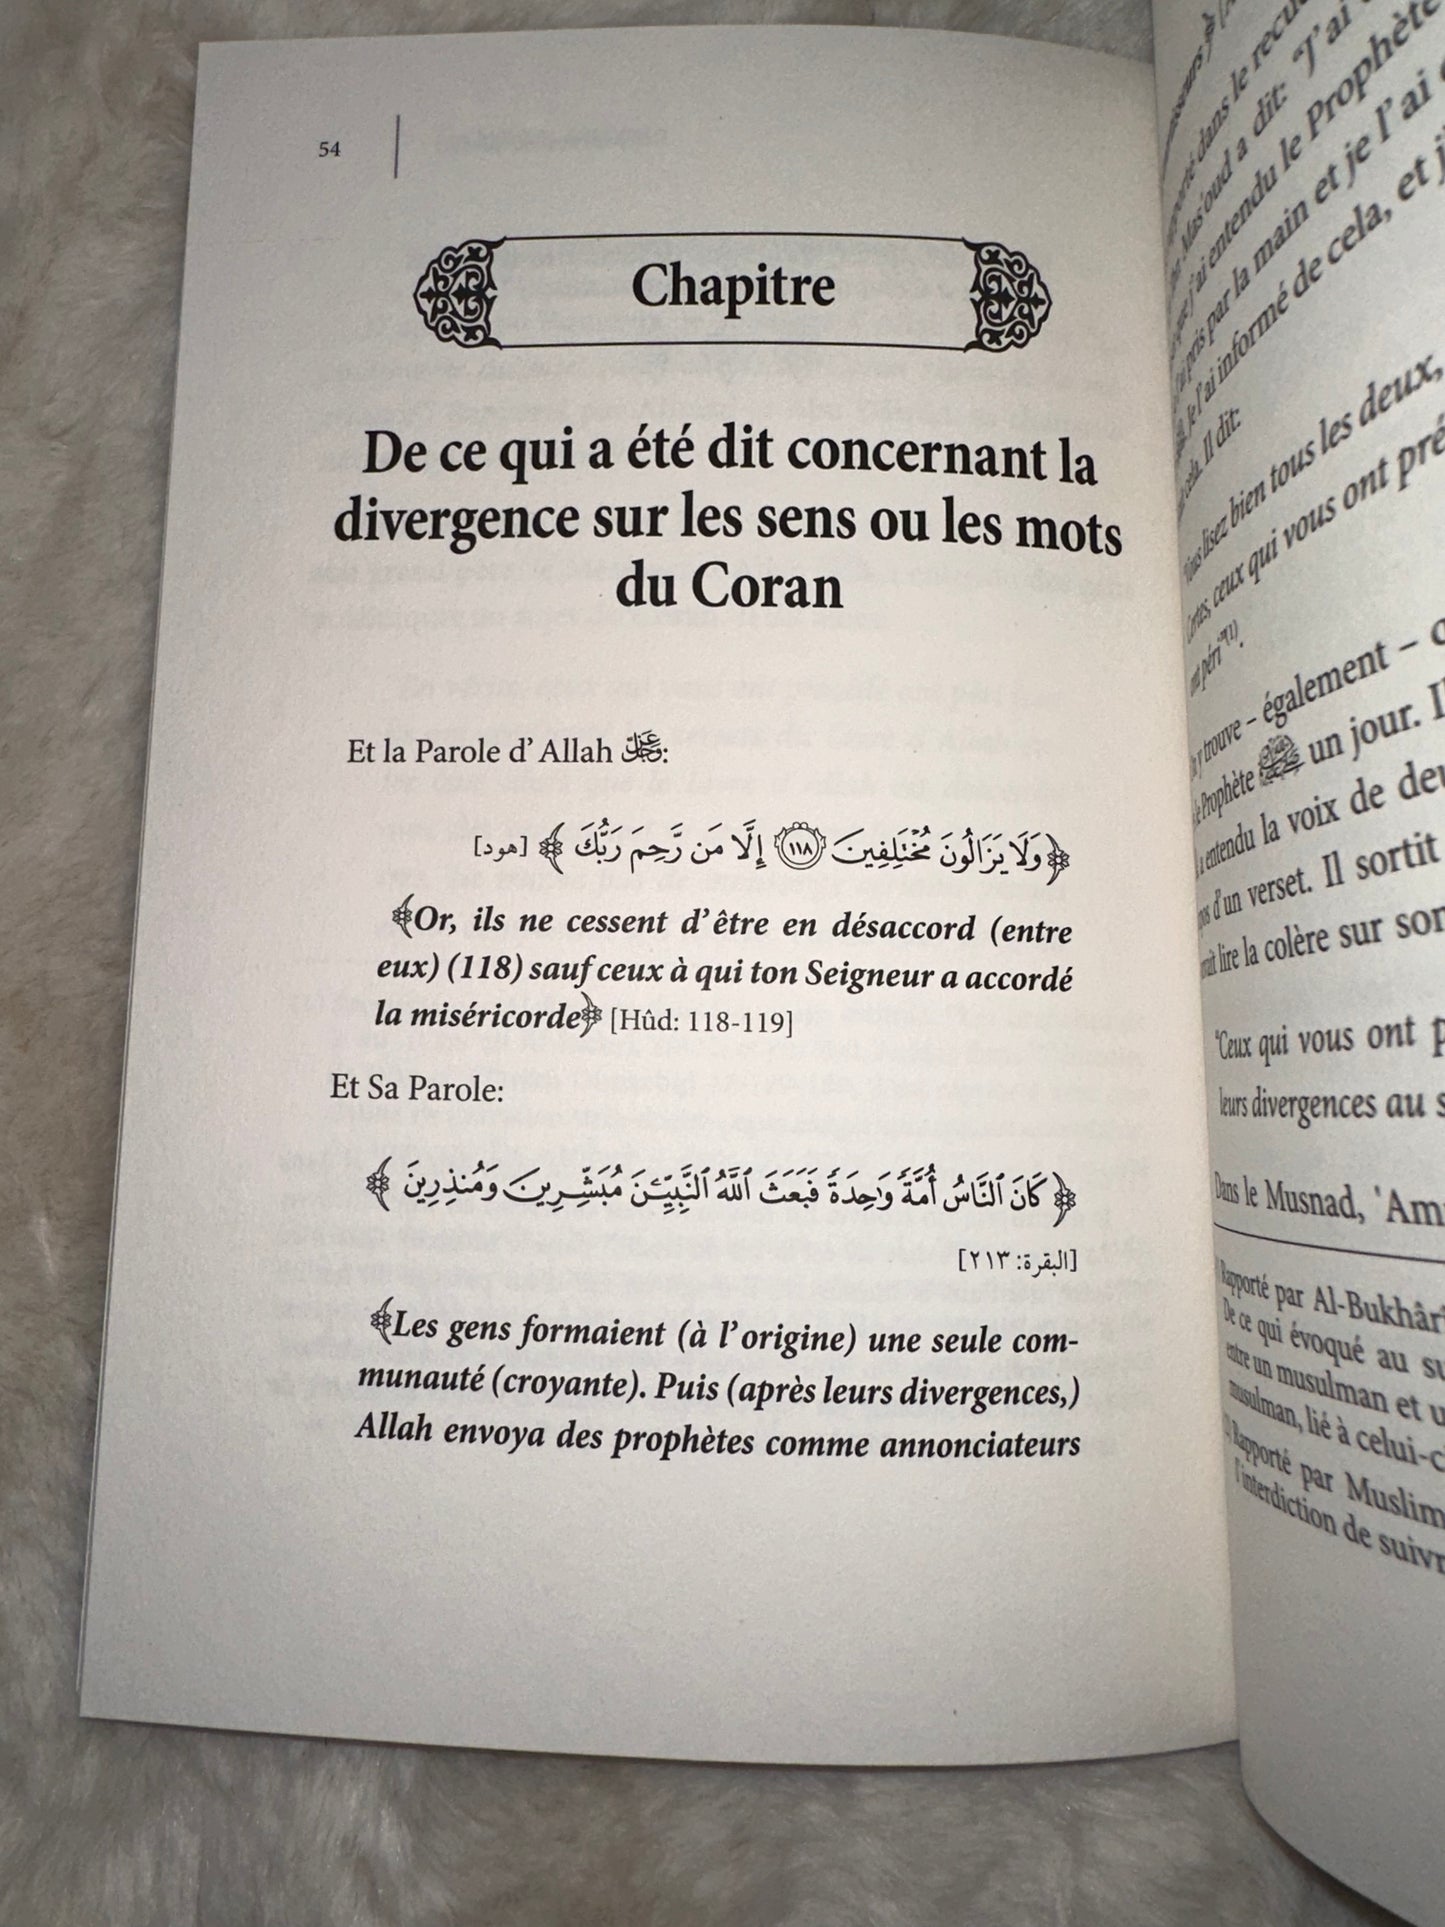 Les Mérites Du Coran, De Mohammed Ibn ‘Abd Al-Wahâb